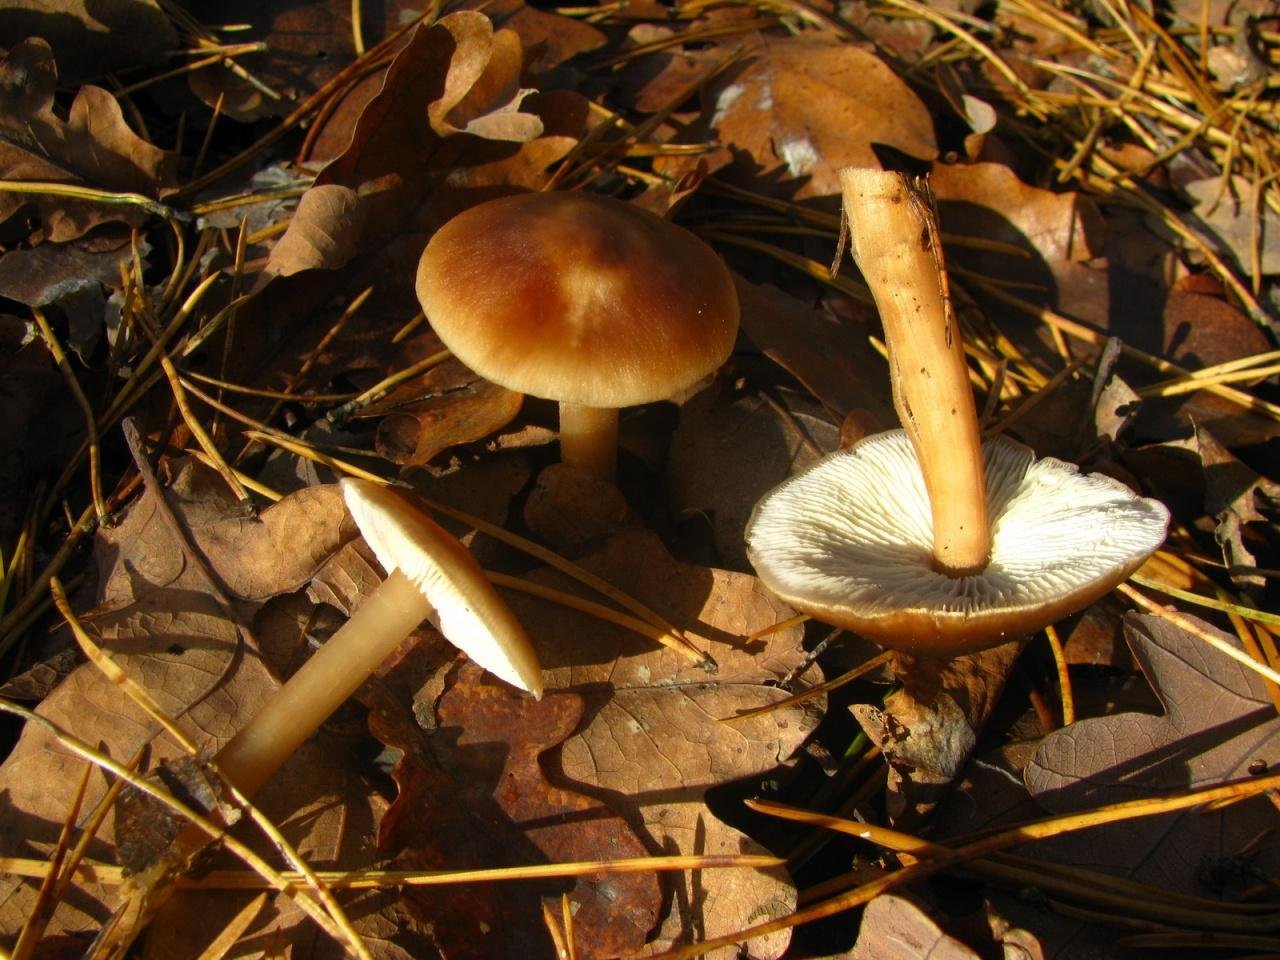 Опенок весенний или коллибия лесолюбивая (gymnopus dryophilus): описание, фото и как готовить этот гриб